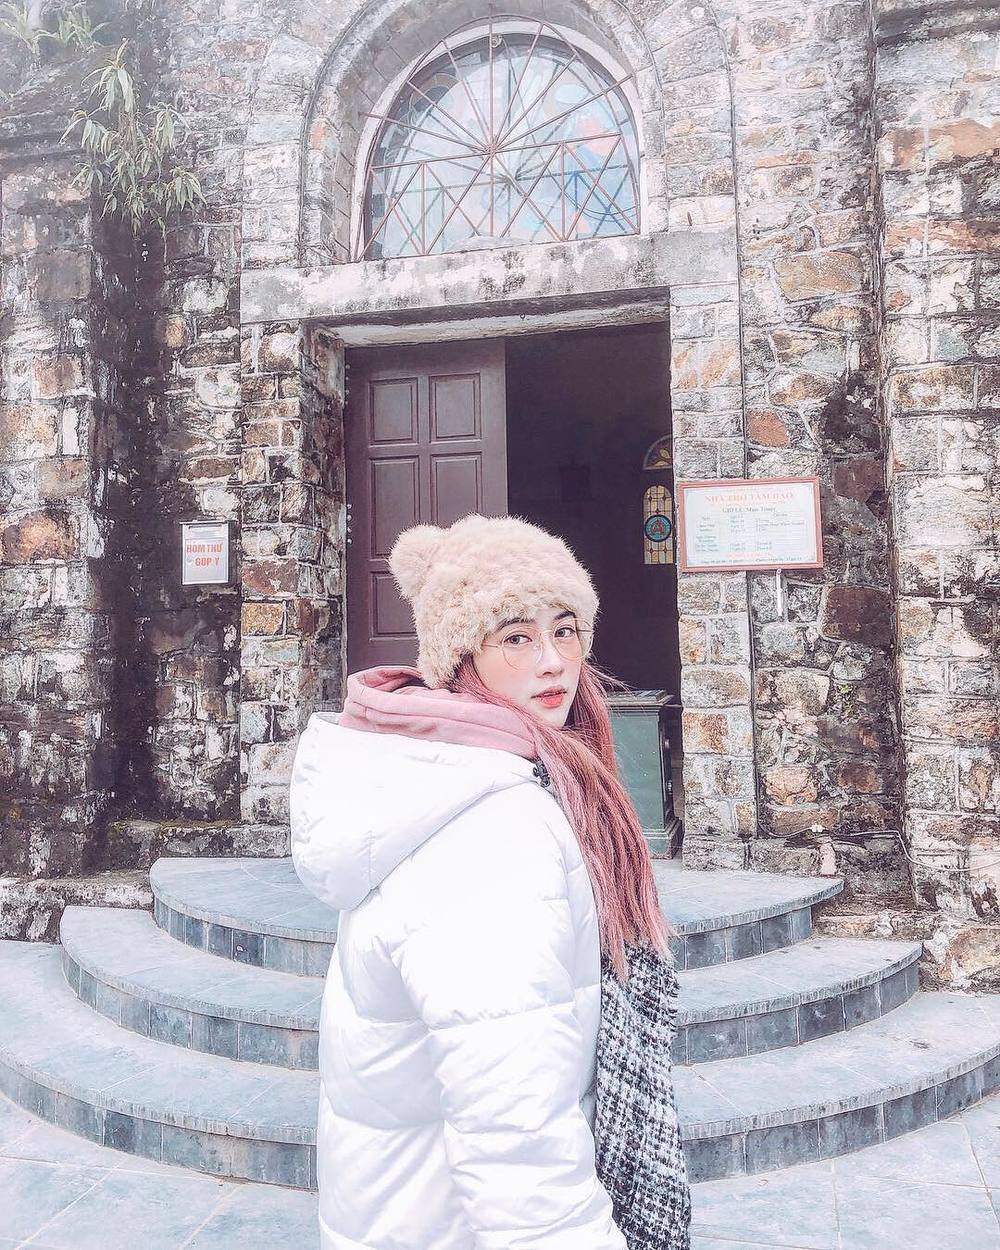  
Nhà thờ đá là điểm đến "sống ảo" cực thu hút ở Tam Đảo (Ảnh: Instagram lebong95)